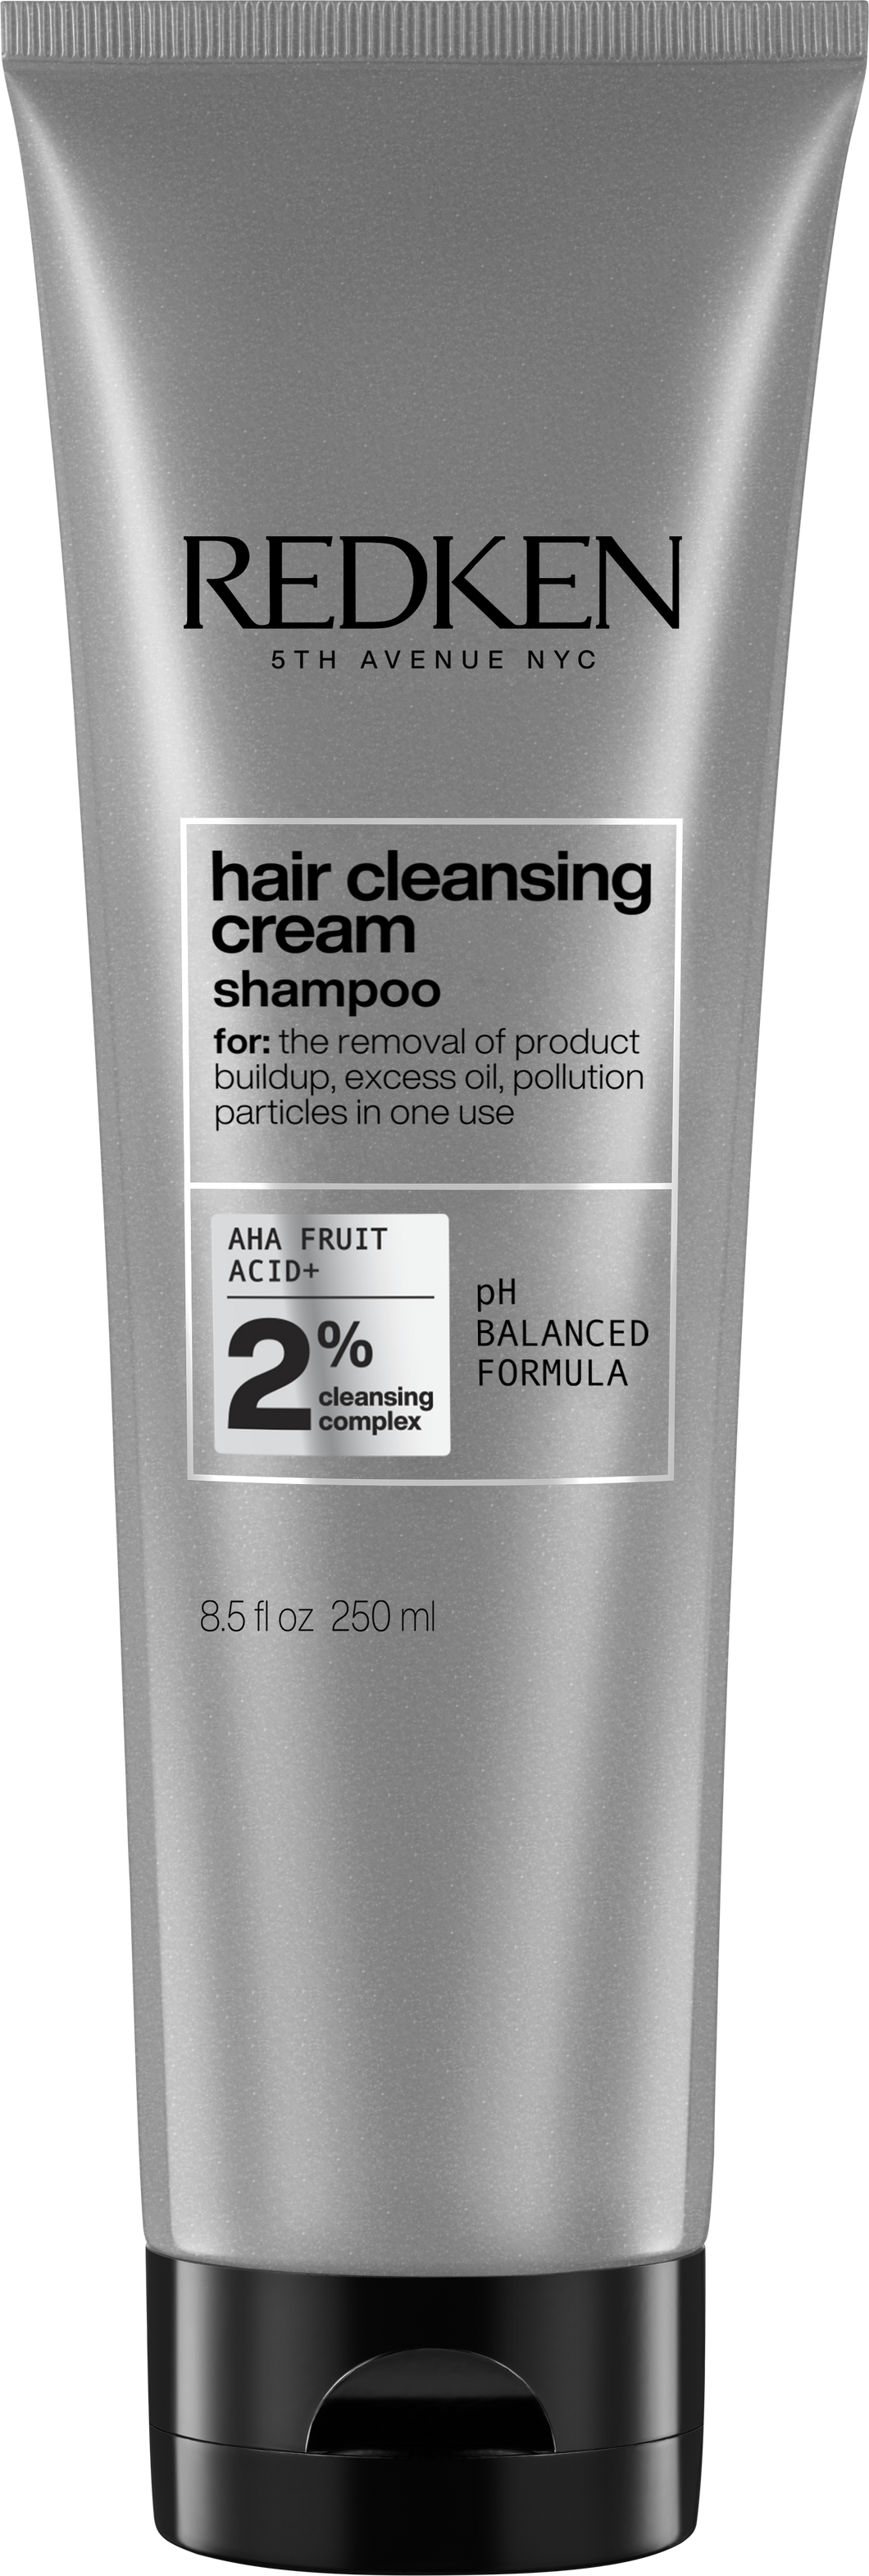 Redken Detox Hair Cleansing Cream 8.5 OZ.